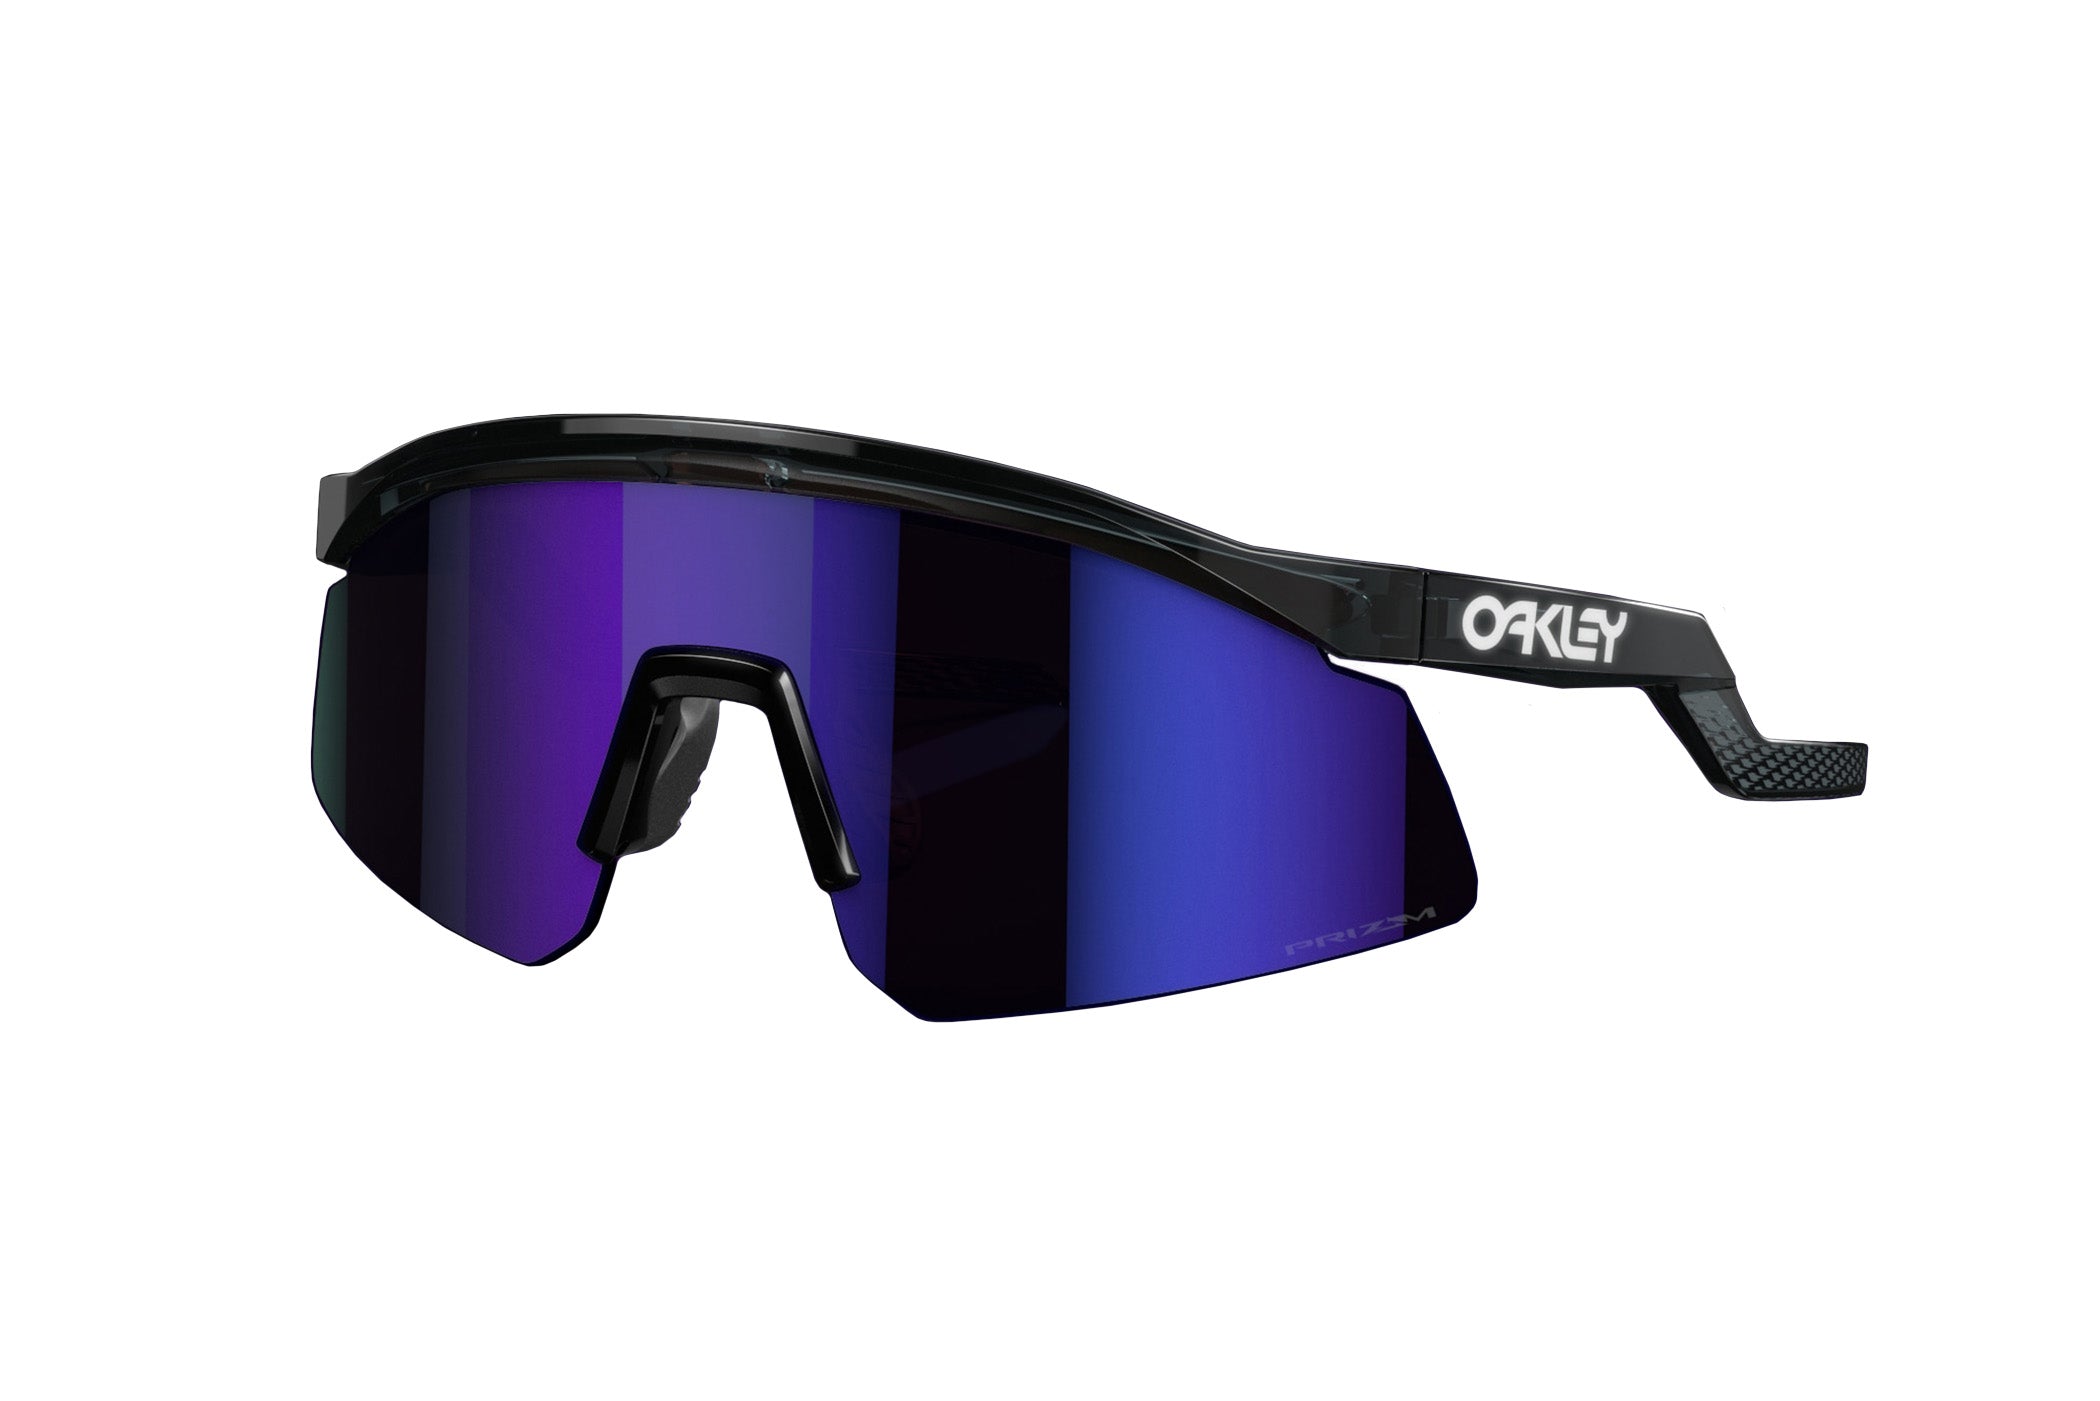 Oakley Hydra Sunglasses The Pro's